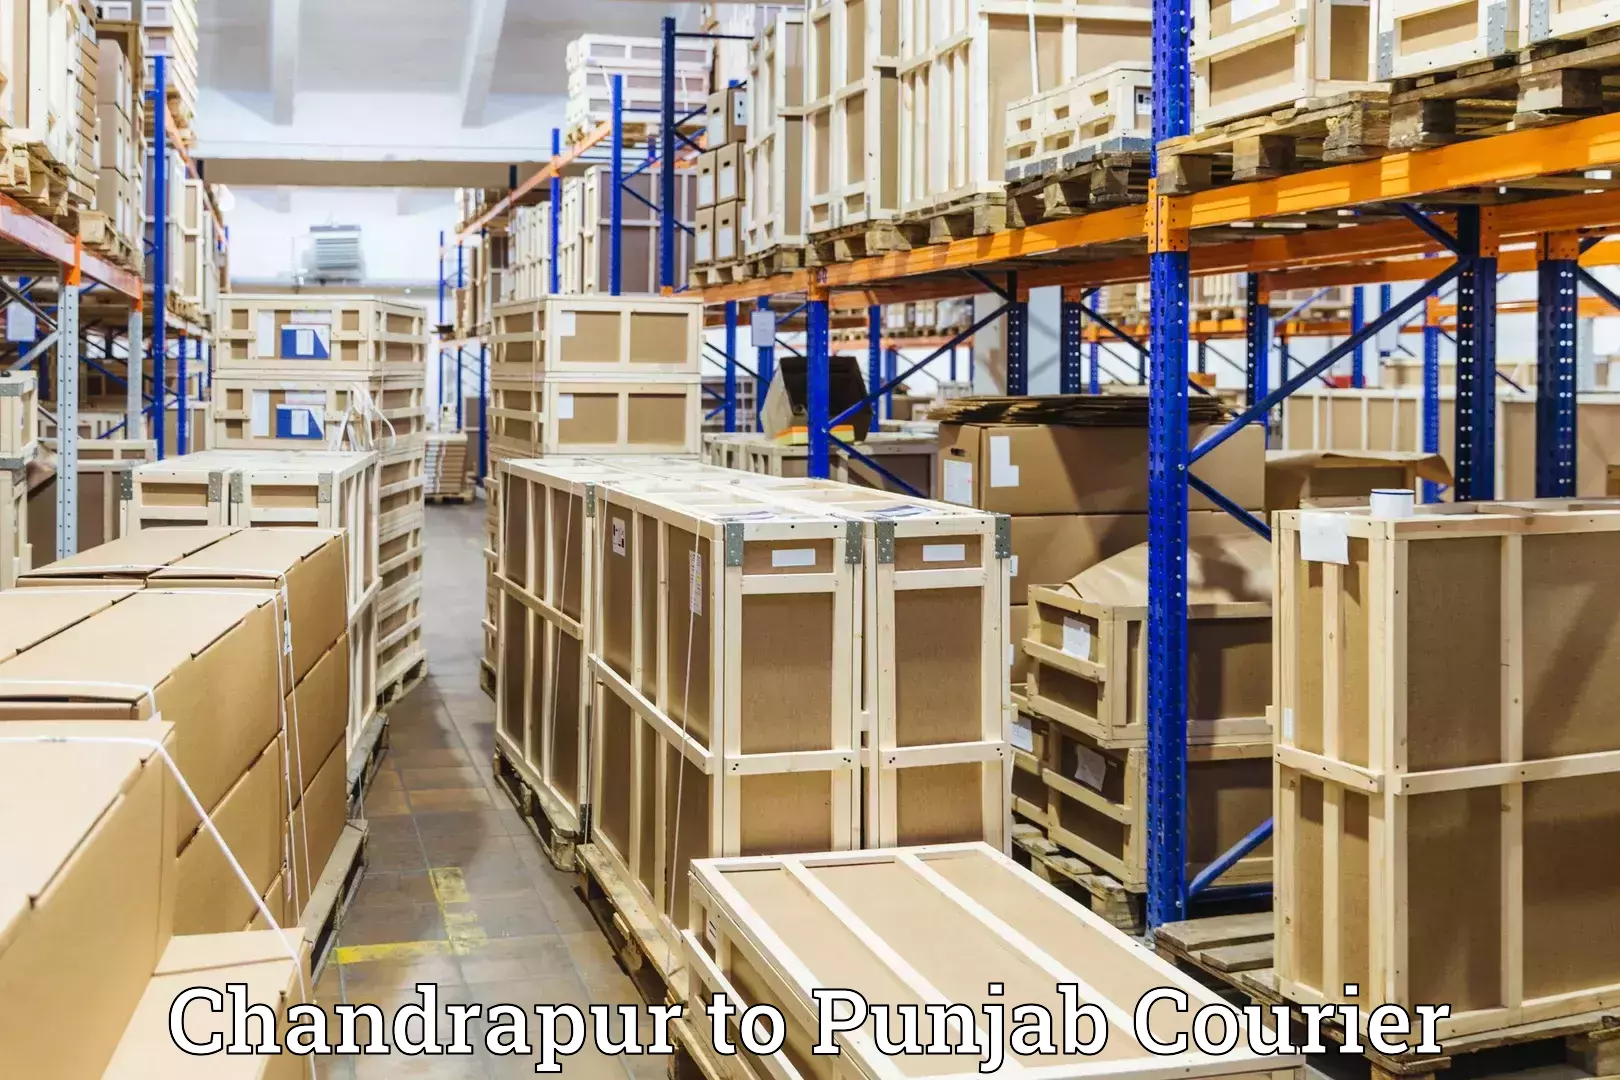 Baggage transport scheduler Chandrapur to Punjab